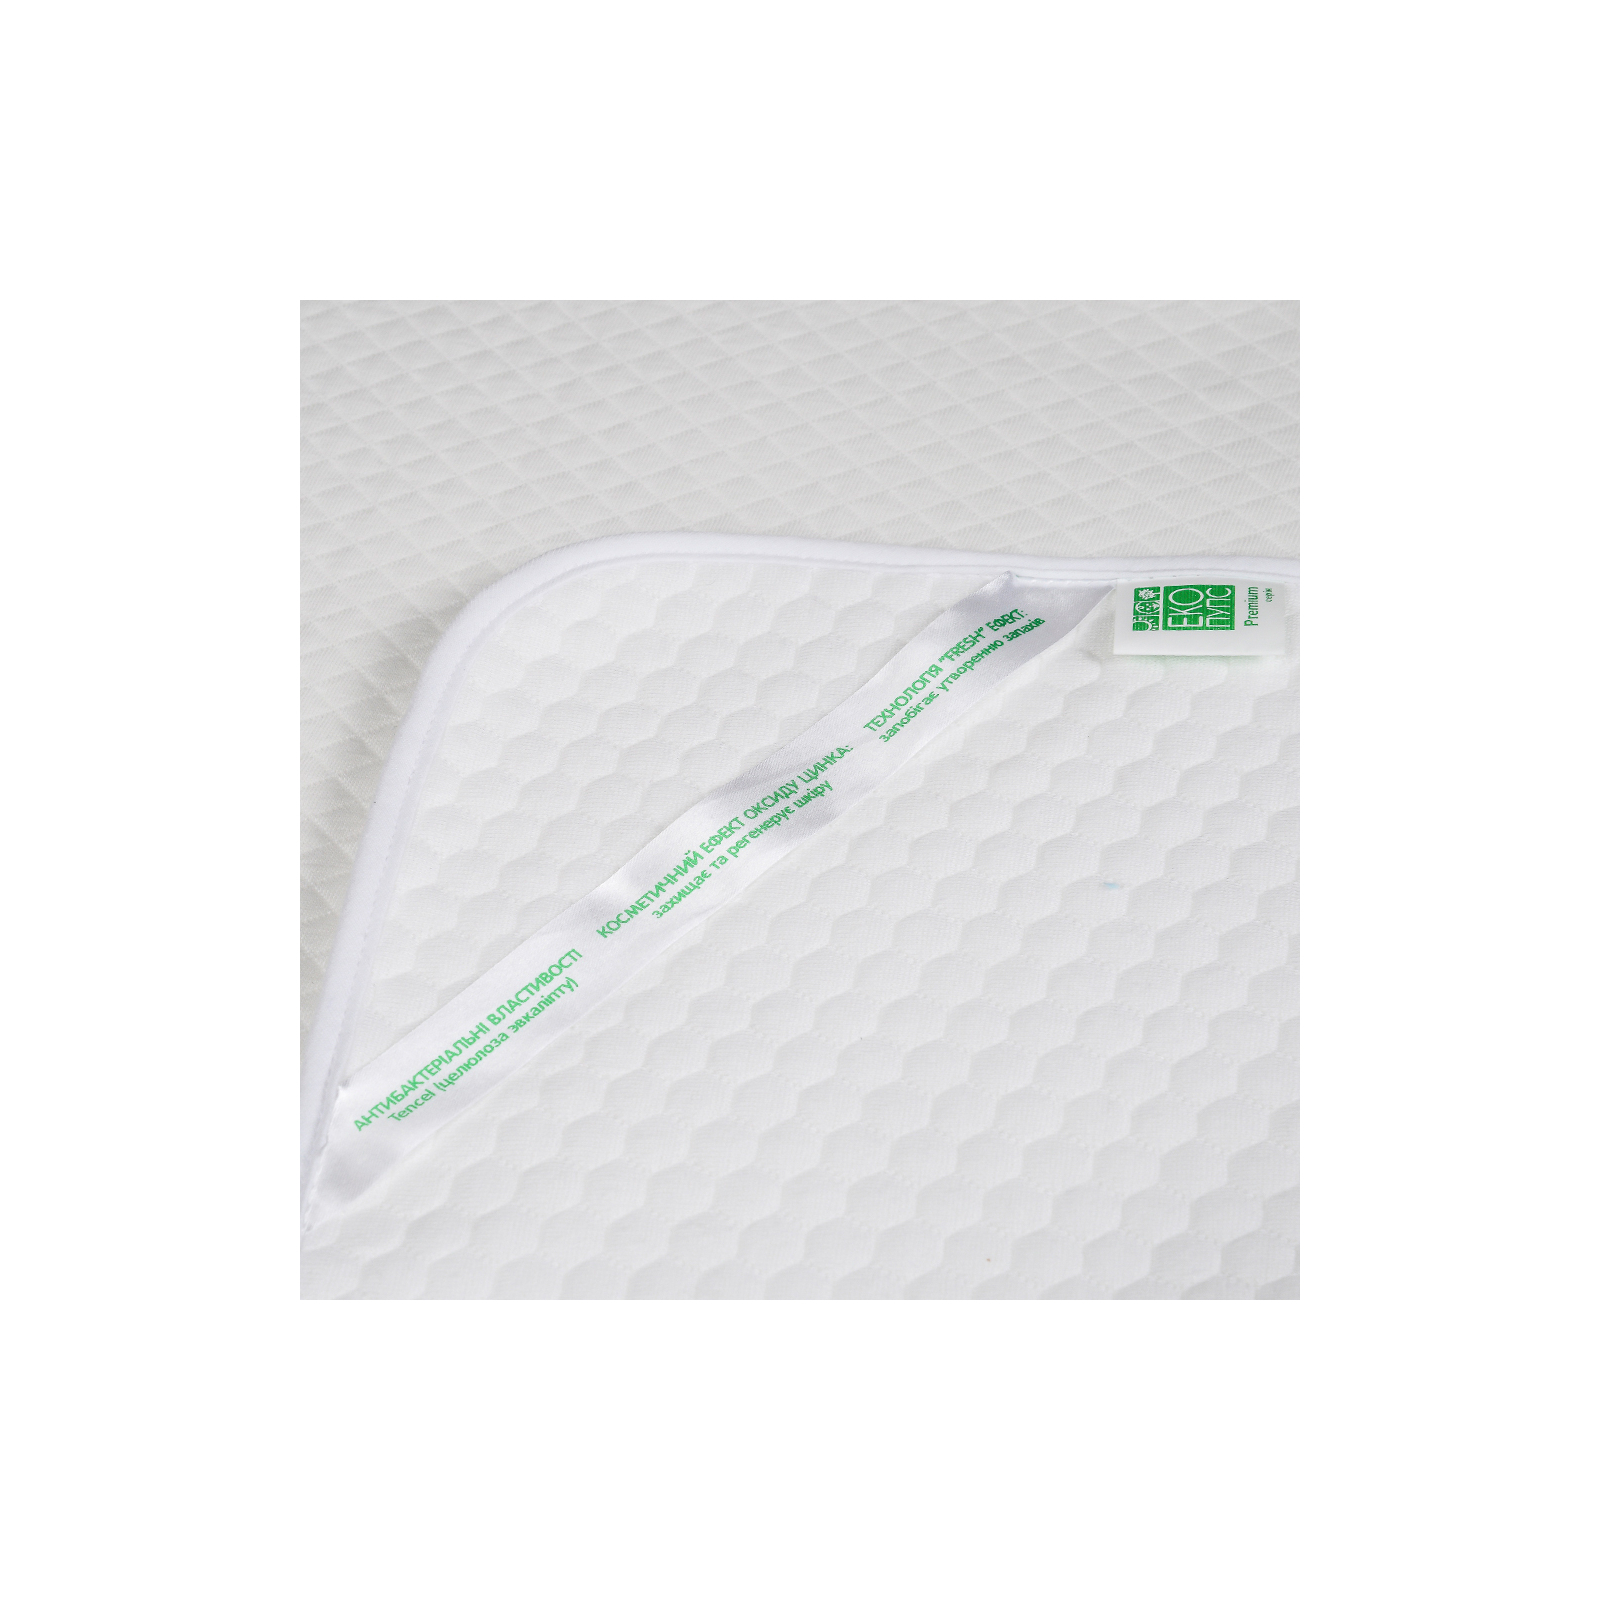 Пеленки для младенцев Еко Пупс Soft Touch Premium непромокаемая двухсторонняя 50 х 70 см melang (EPG07W-5070m) изображение 4